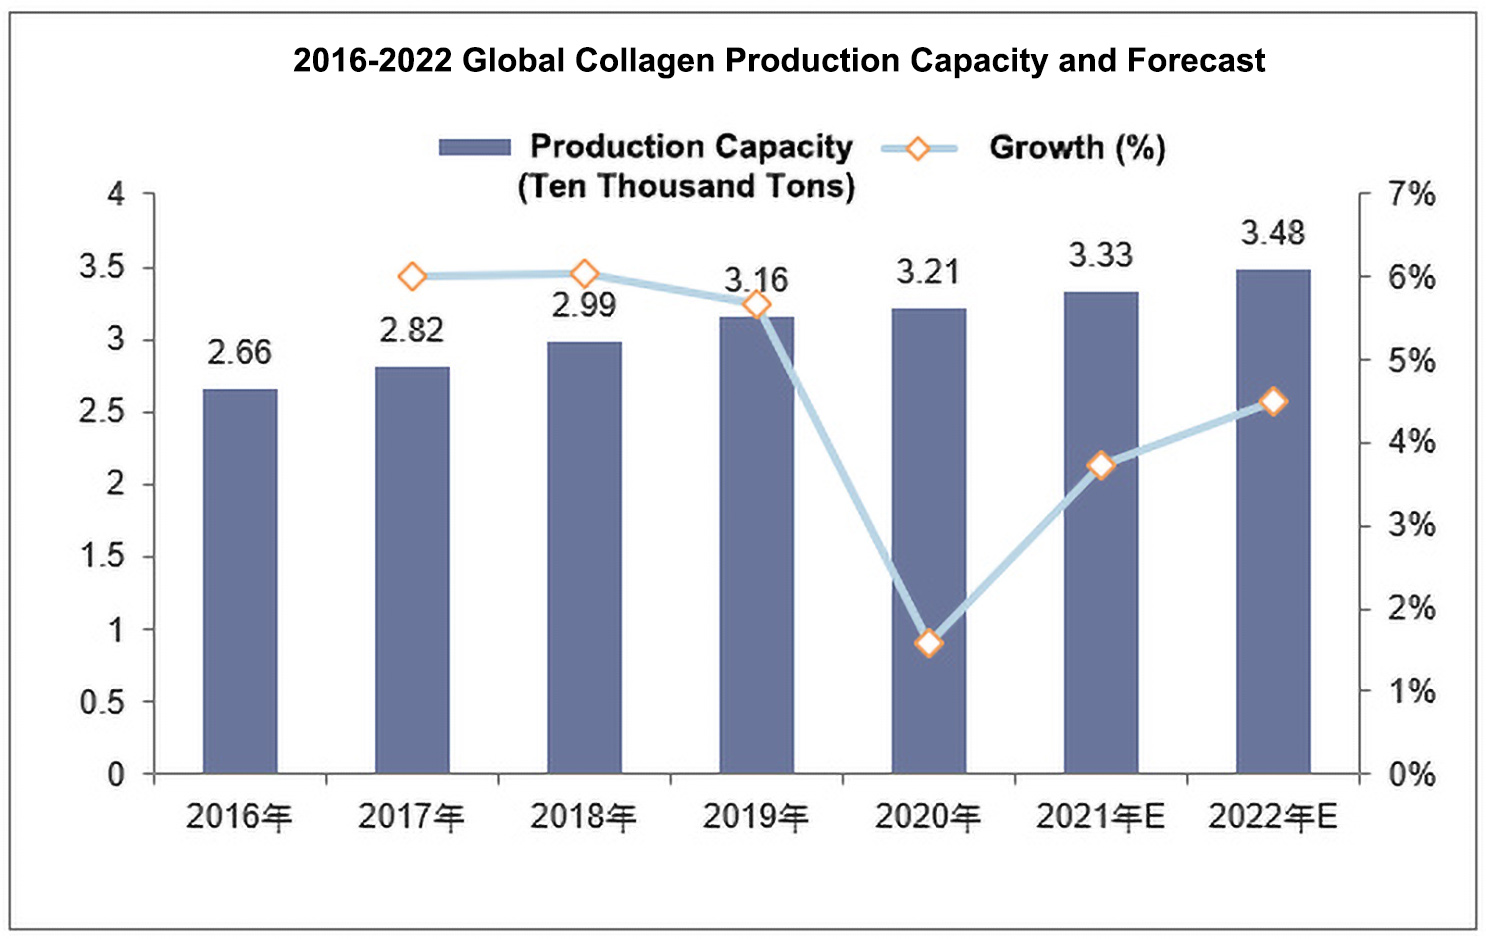 உலகளாவிய கொலாஜன் தொழில் வளர்ச்சி நிலை 2022-2028க்கான வாய்ப்பு அறிக்கை